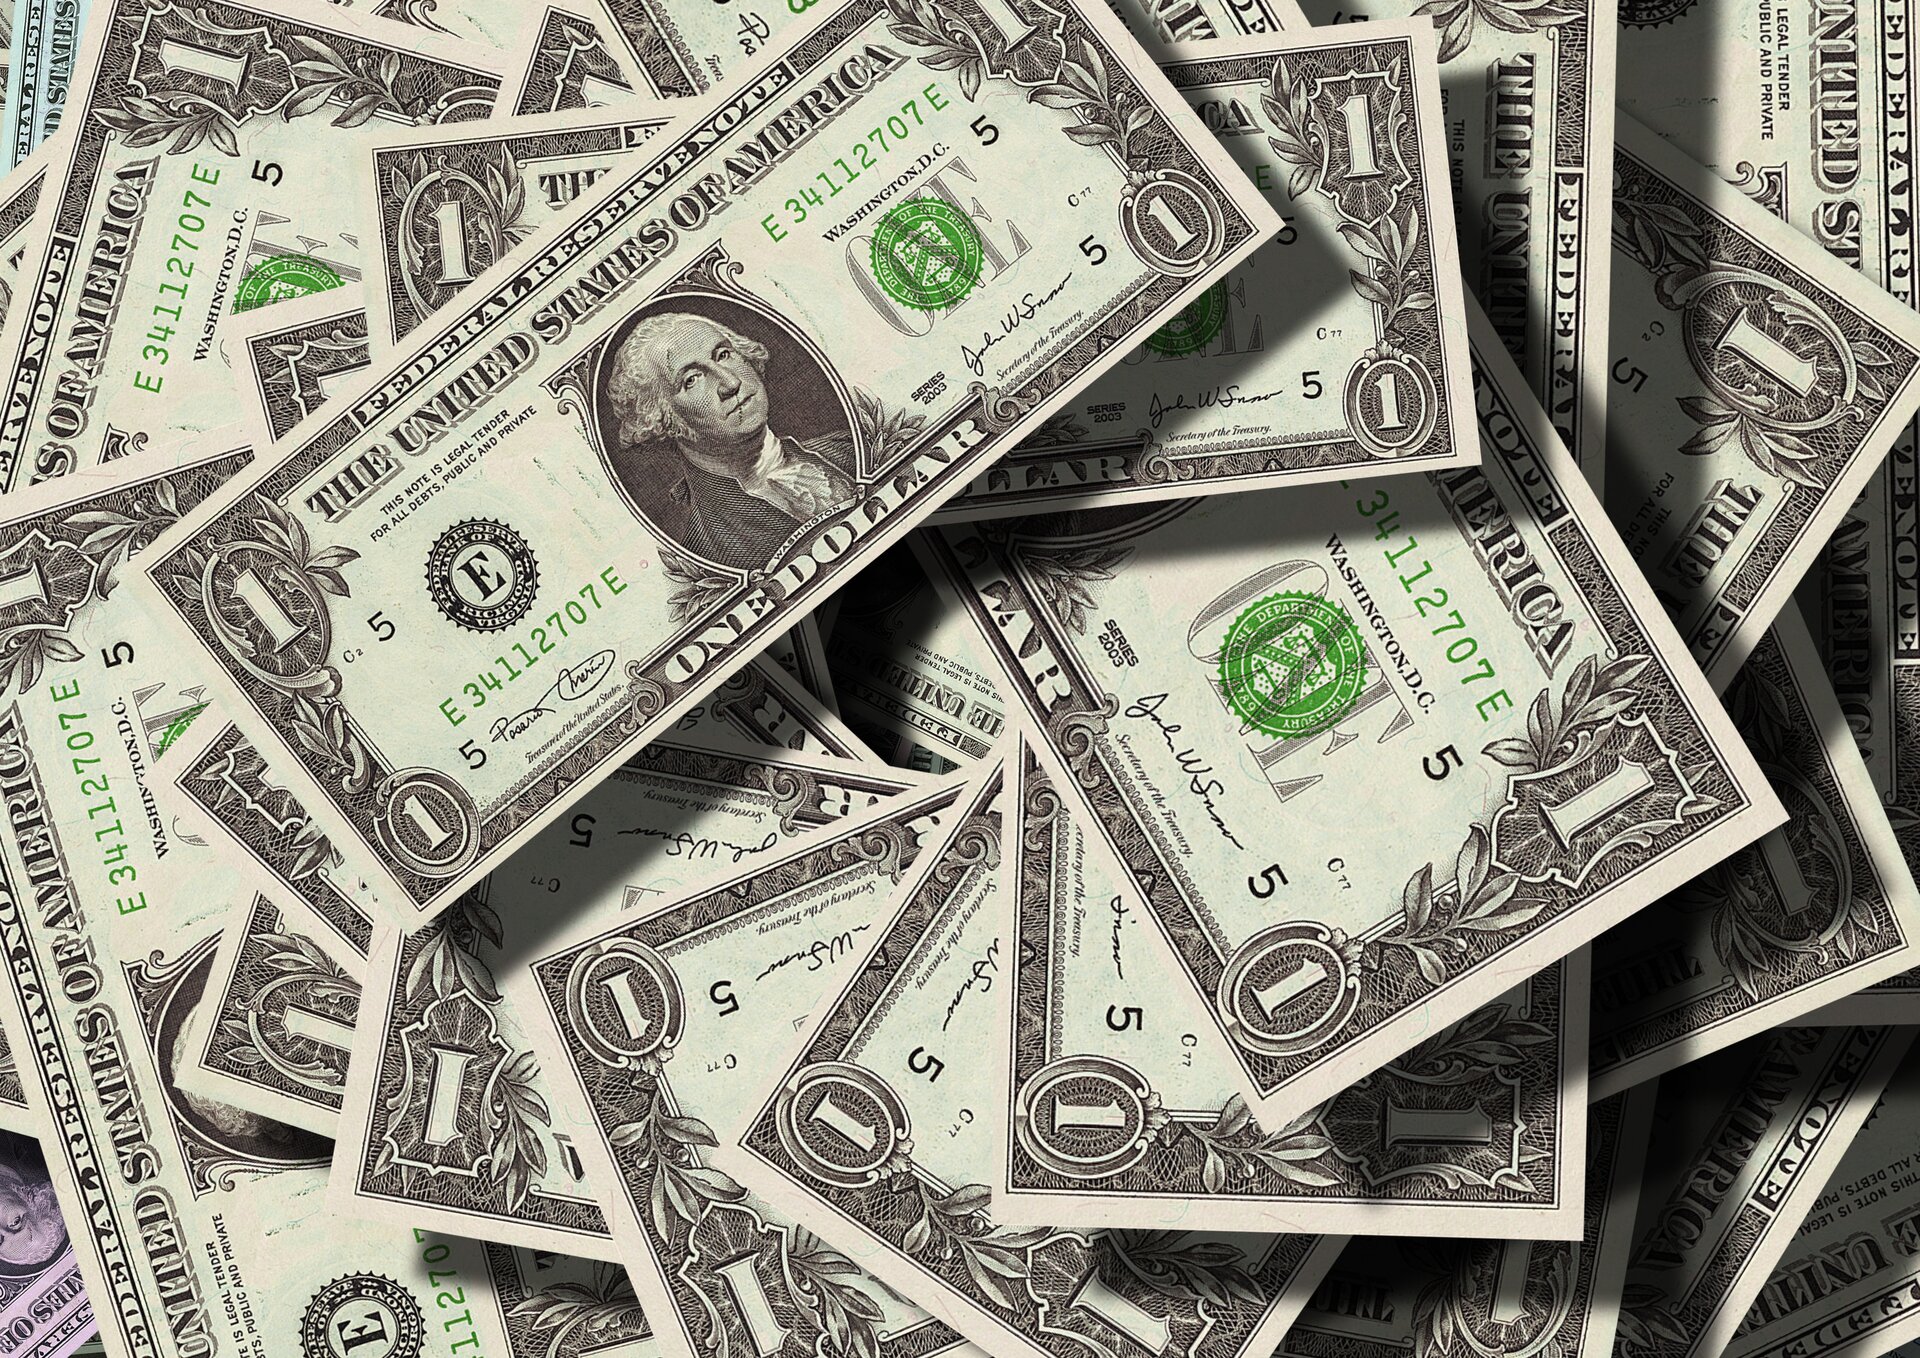 Na zdjęciu znajdują się dolary amerykańskie - banknoty o nominale jednego dolara rozsypane spontanicznie. Jeden z banknotów 1‑dolarowych z podobizną George'a Washingtona jest widoczny w całości.